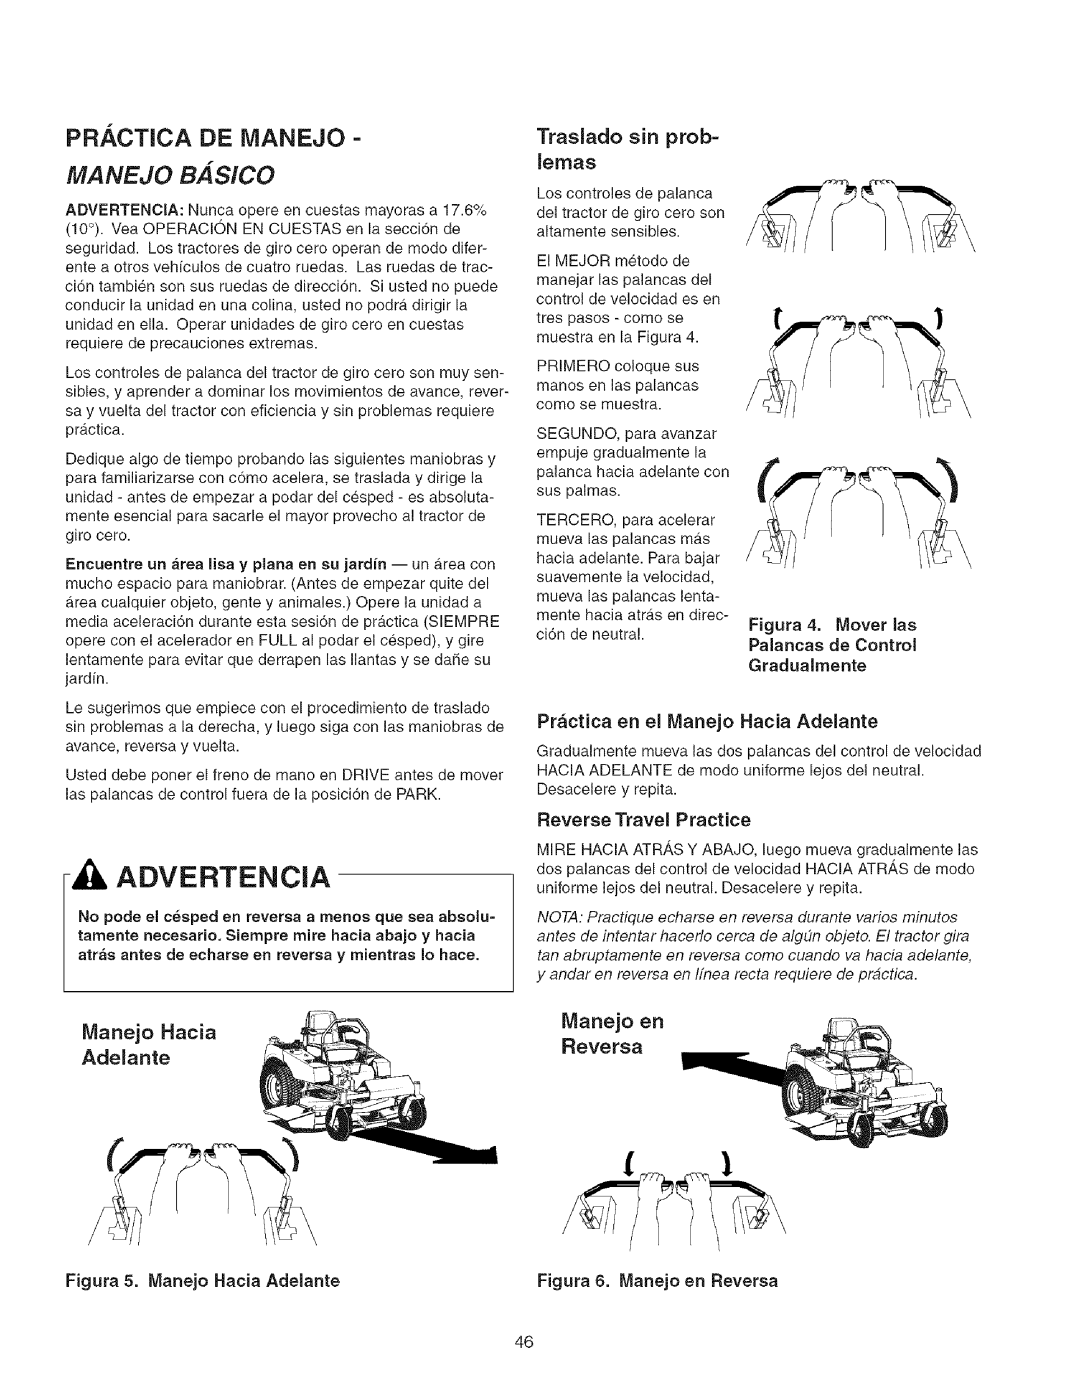 Craftsman 107.2777 manual Pr. ,Ctica De Ivianejo, MANEJO BASlCO, Traslado sin prob=, Manejo Hacia, Manejo en, Adelante 